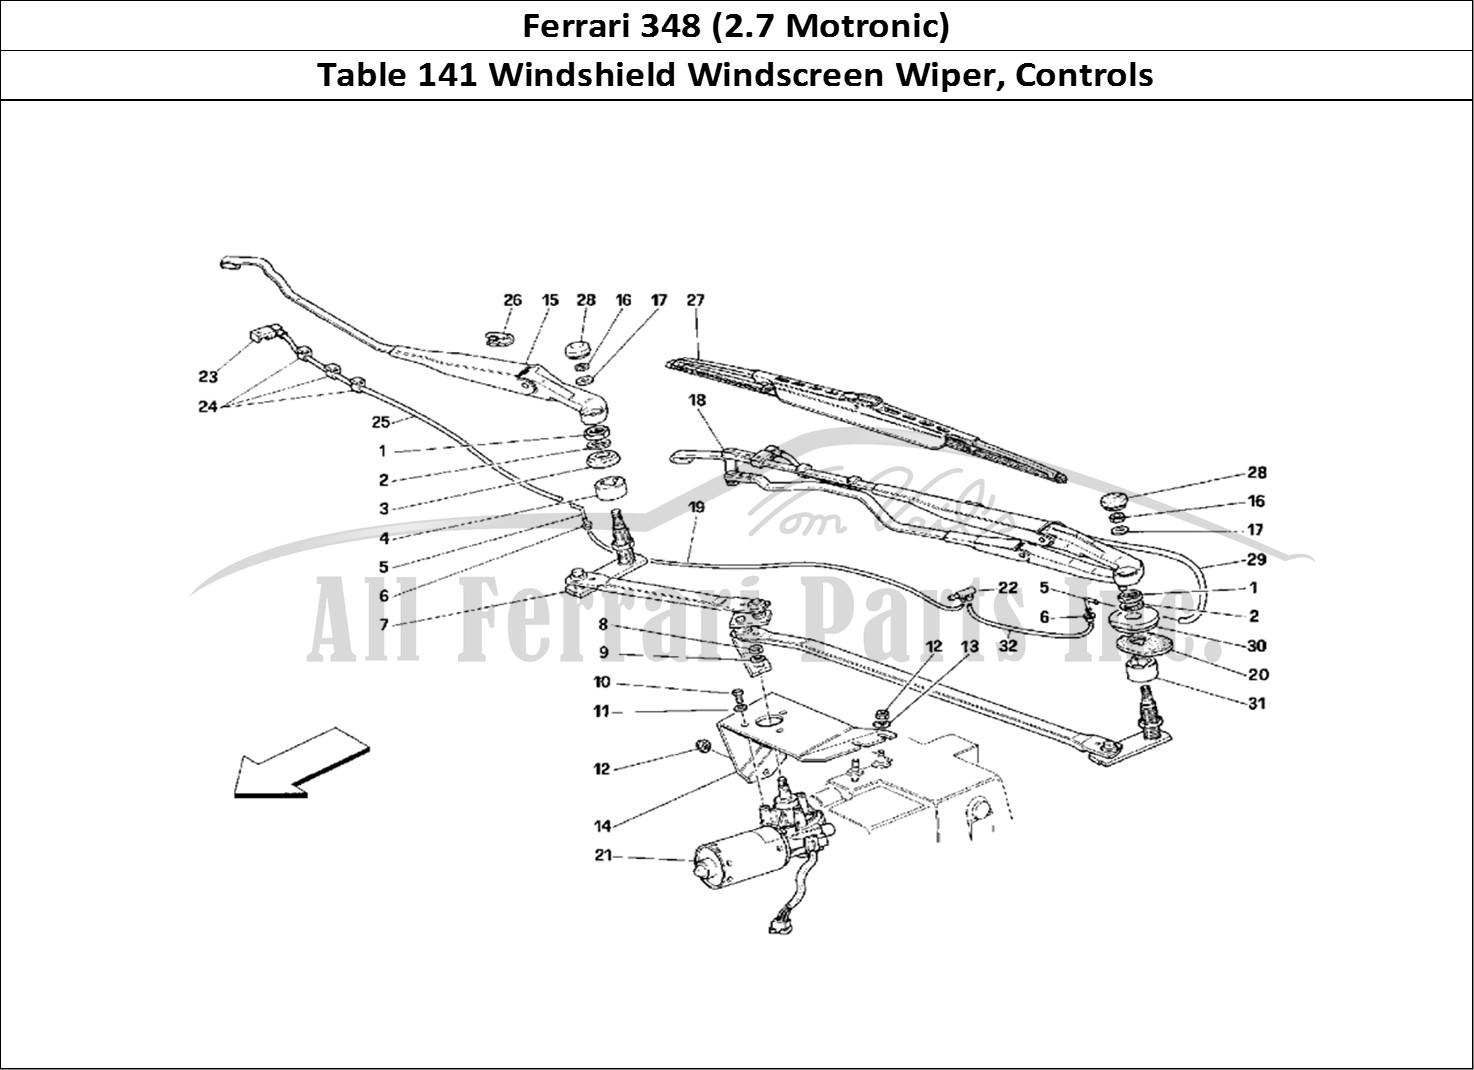 Ferrari Parts Ferrari 348 (2.7 Motronic) Page 141 Windshield Wiper and Cont